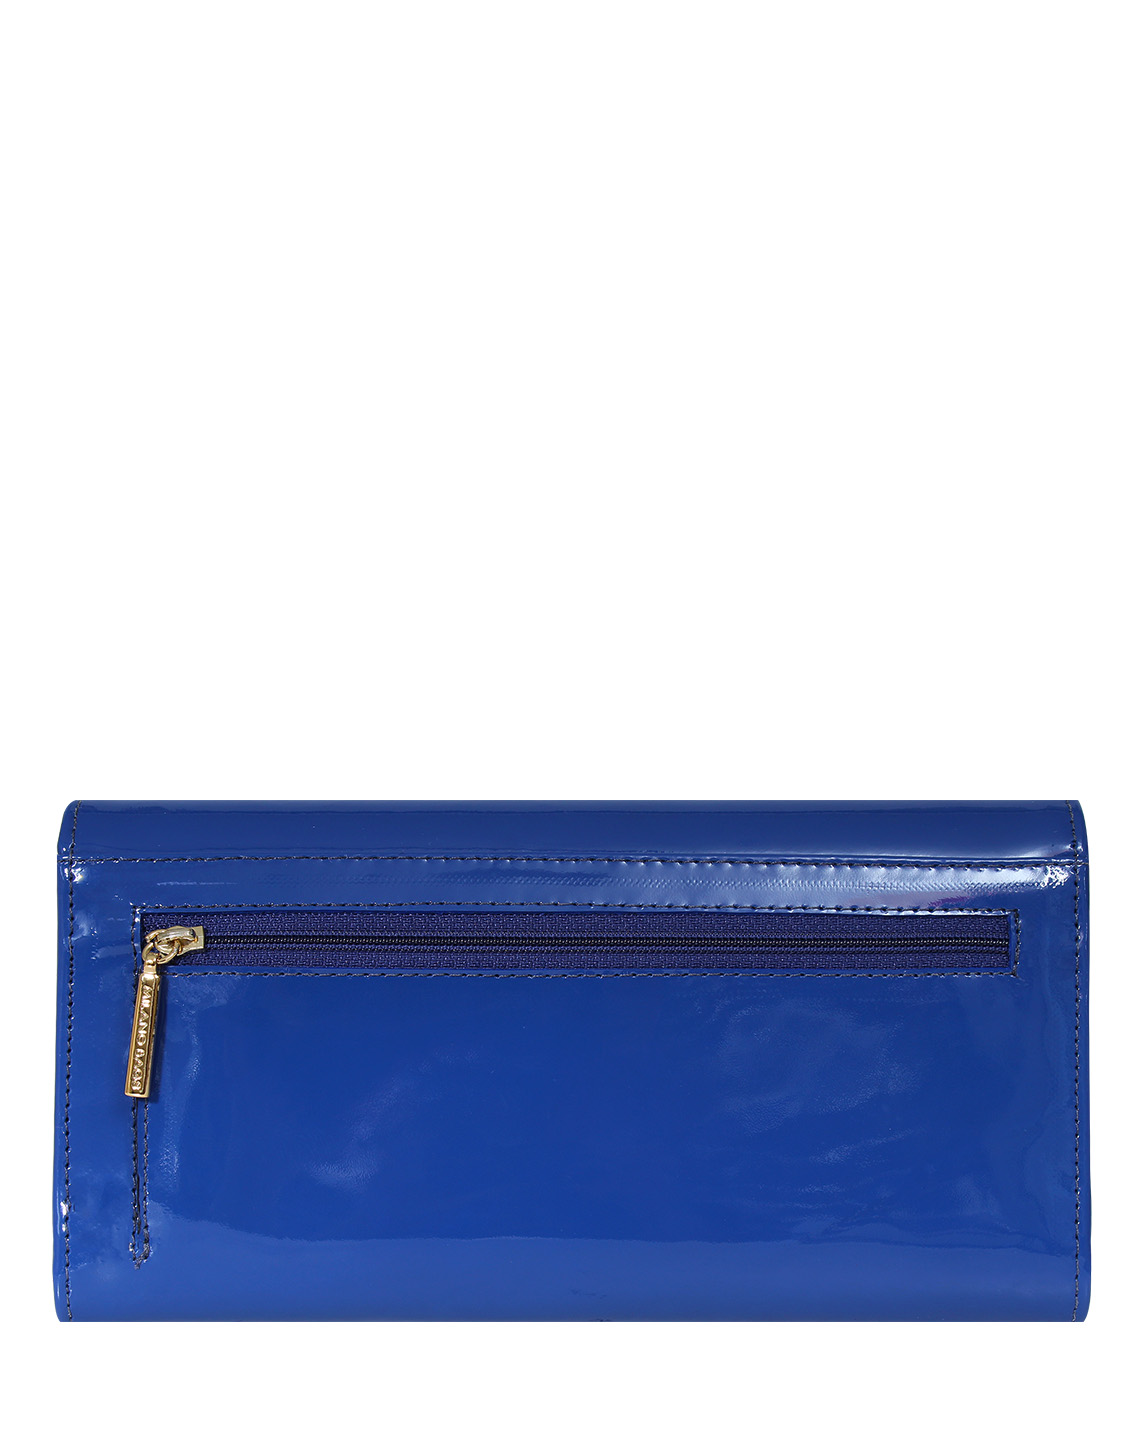 Billetera de Mujer BM-500 Color Azul